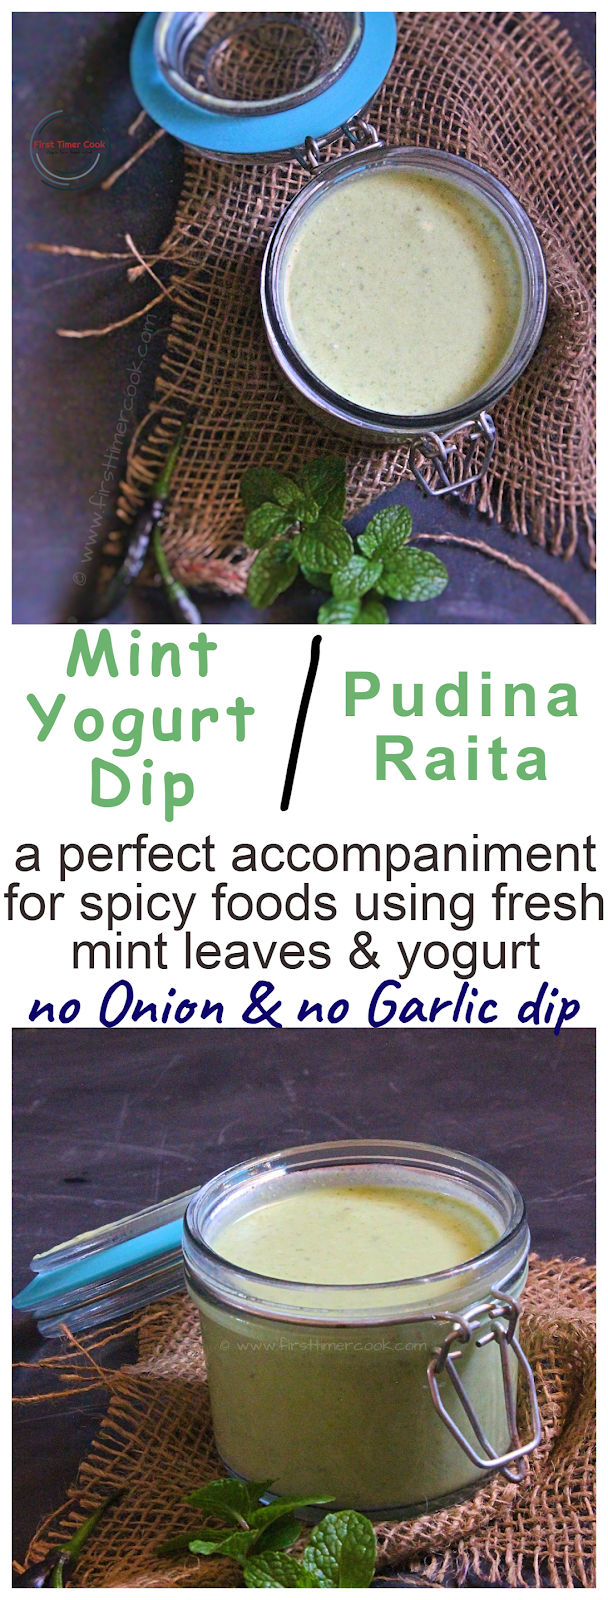 Pudina Raita | Mint Yogurt Dip - First Timer Cook